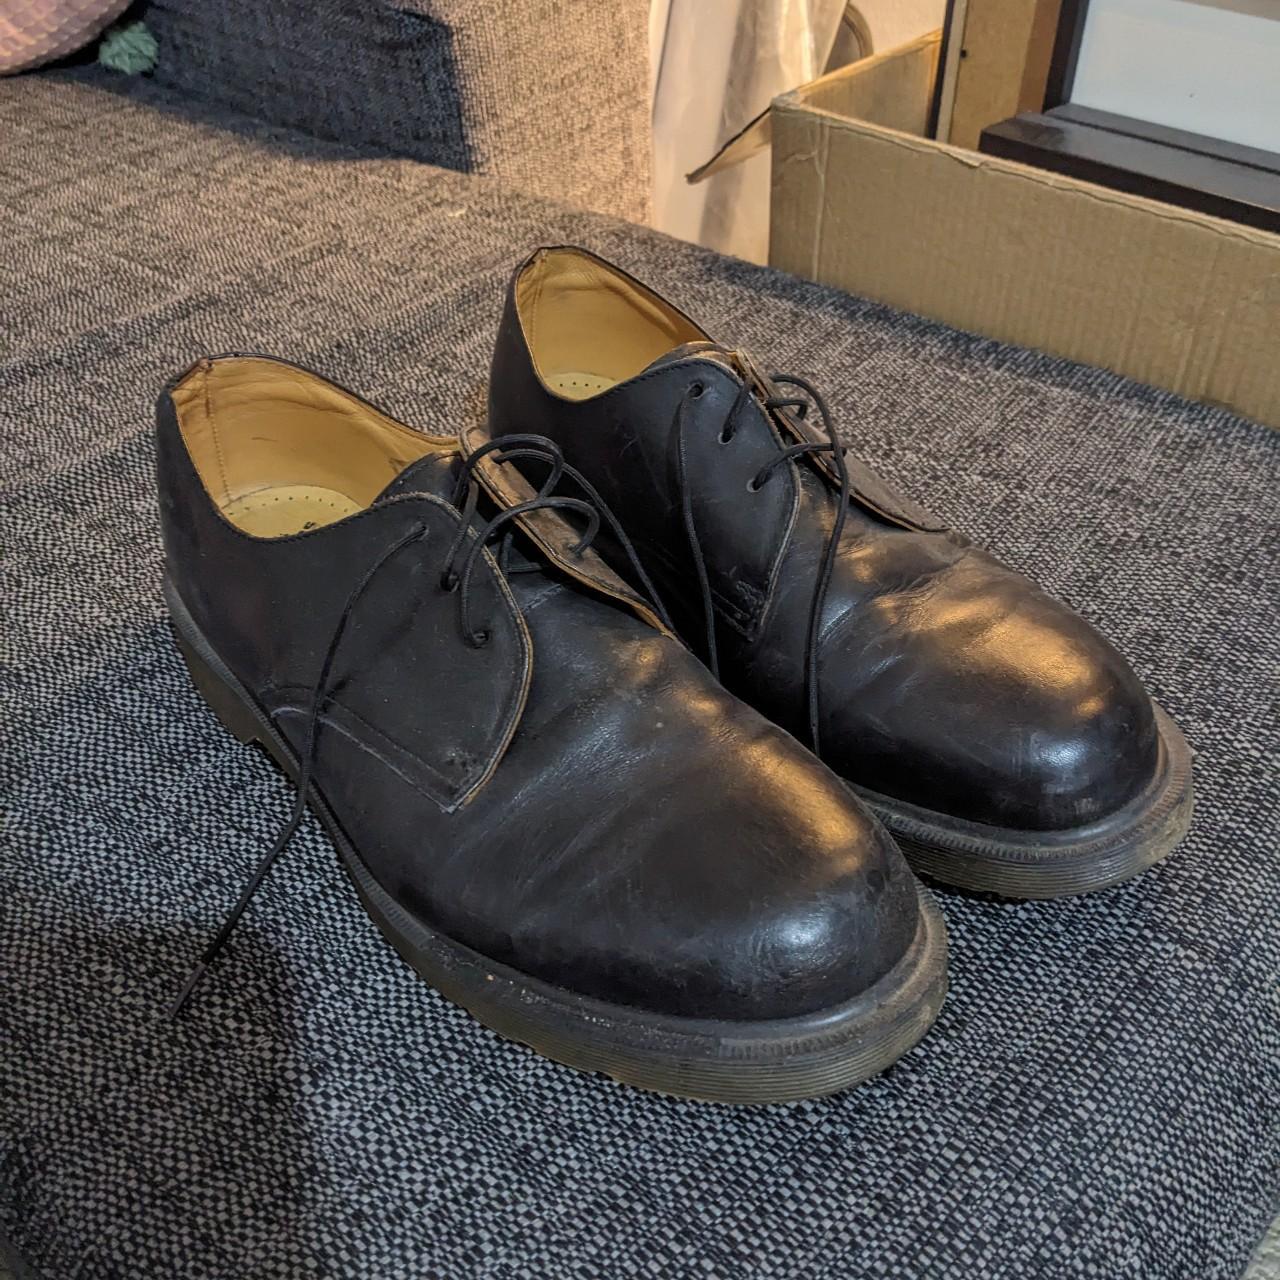 Dr. Marten shoes. UK Size 12 - Depop